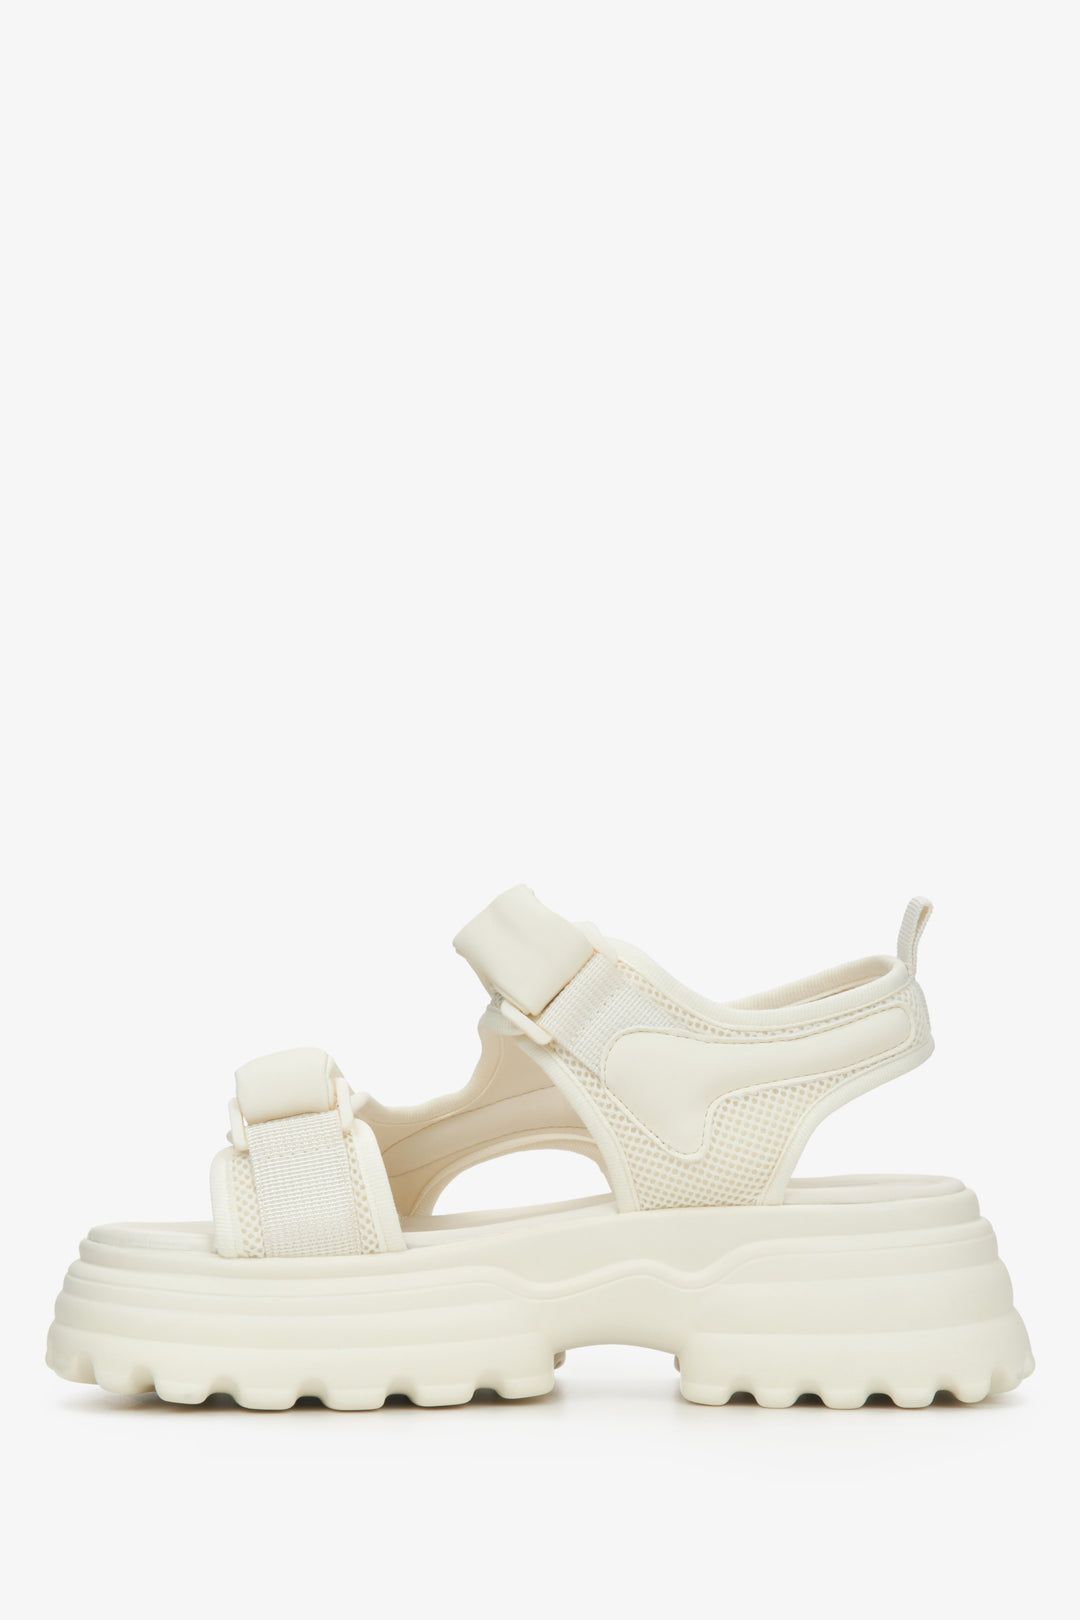 Sportowe sandały damskie ES8 w kolorze białym - profil buta.